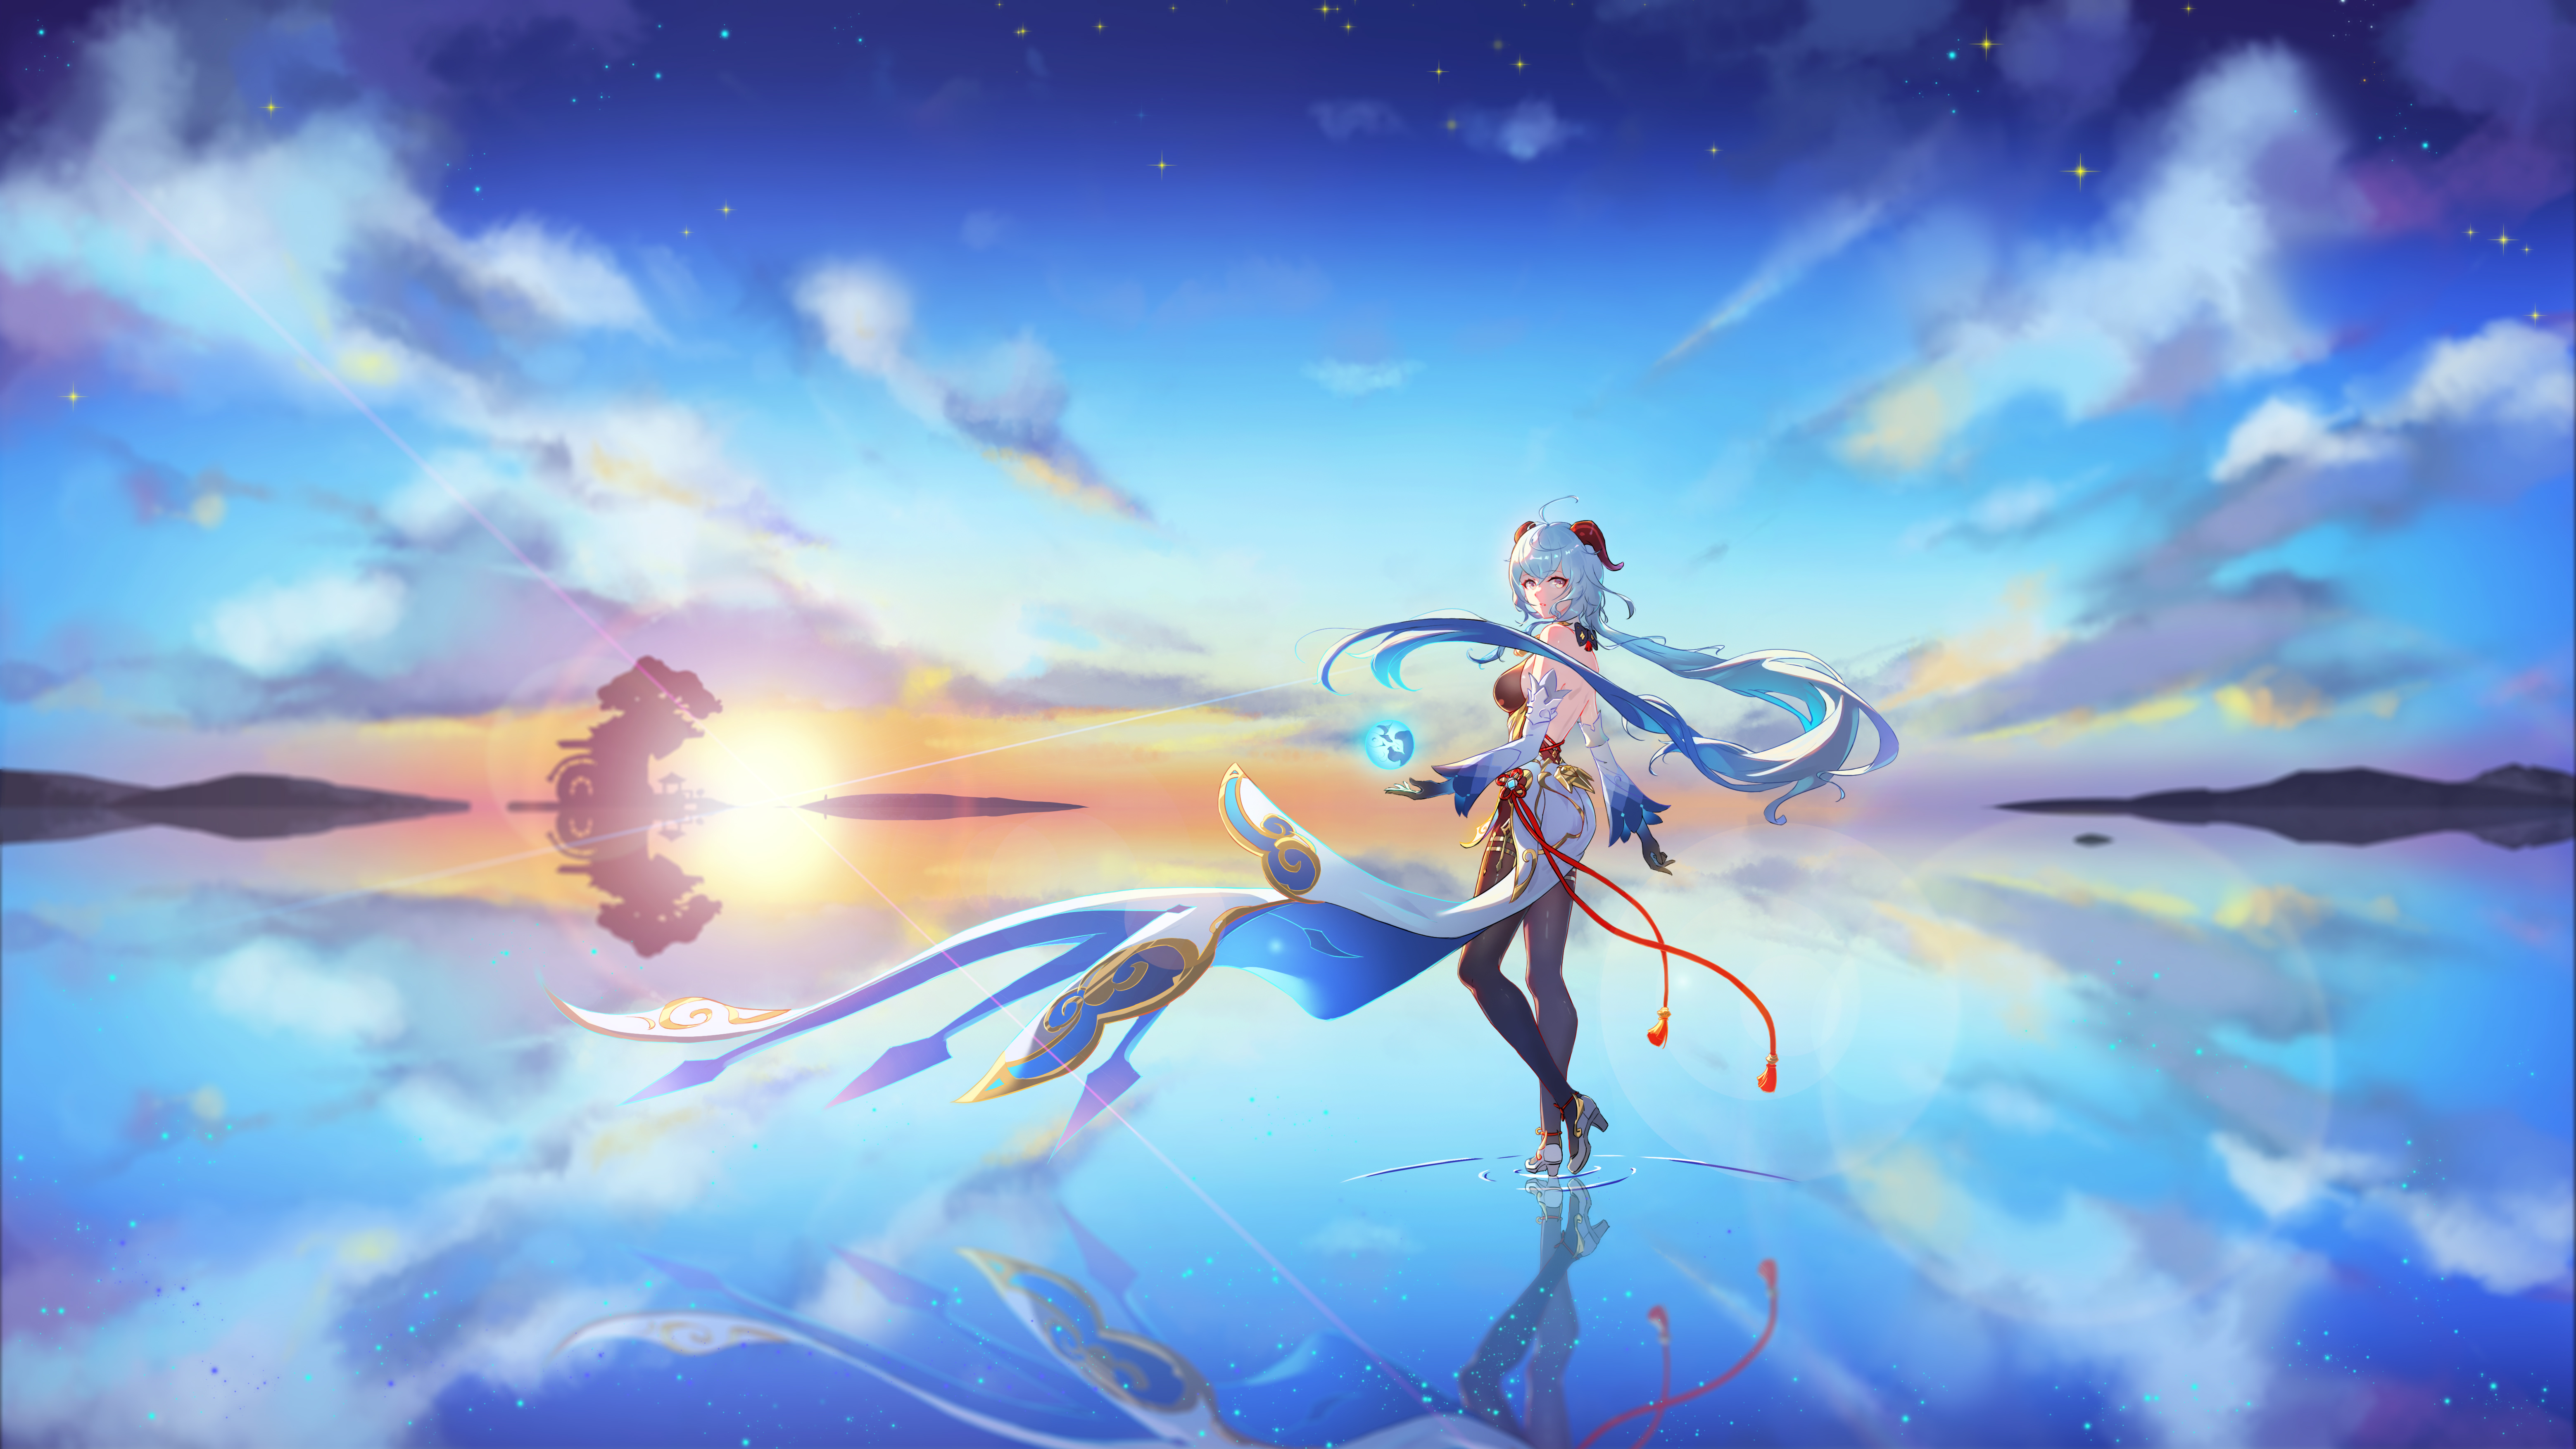 Digital Art Video Game Art Genshin Impact Ganyu Genshin Impact Horns Water Sea Sky Clouds Reflection 6236x3508